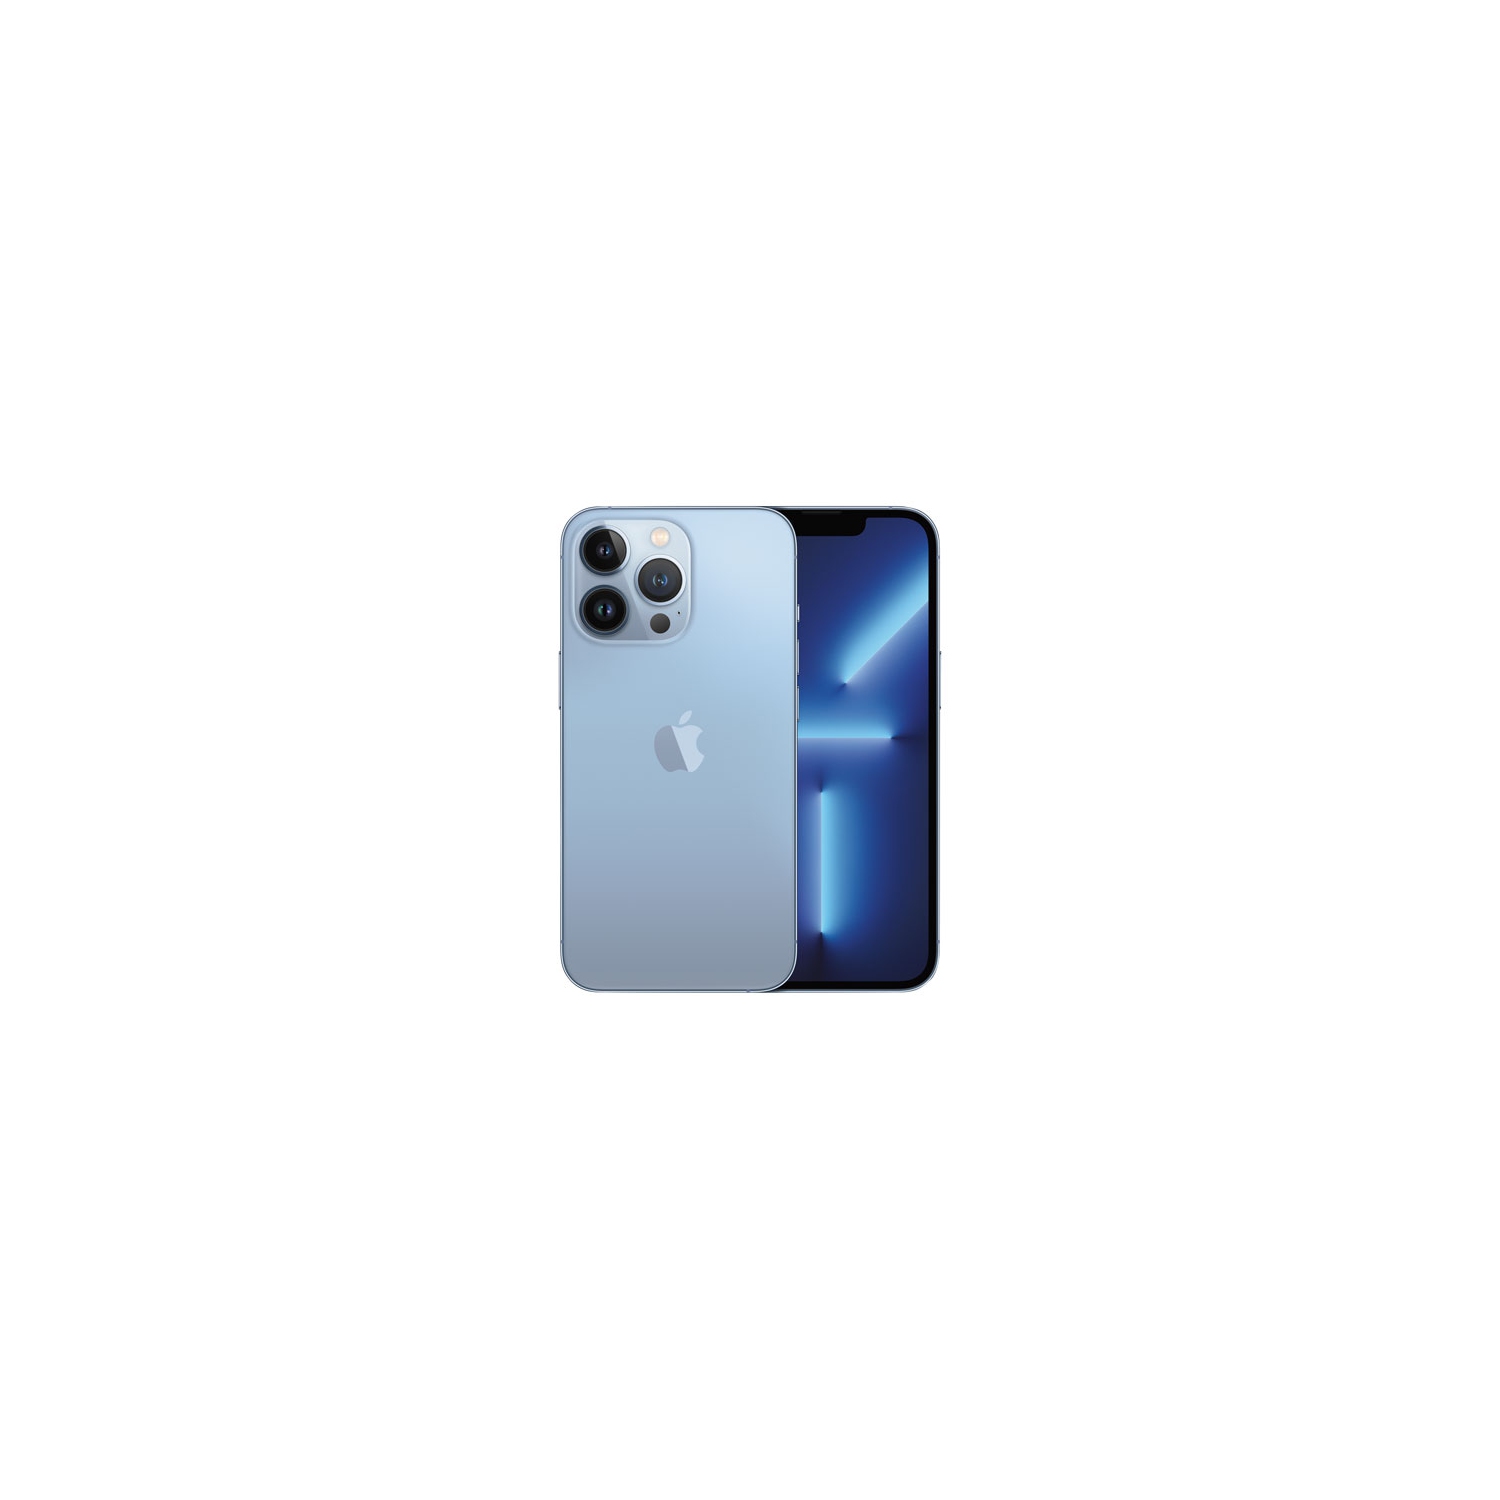 Apple iPhone 13 Pro 512GB - Sierra Blue - Unlocked - Open Box